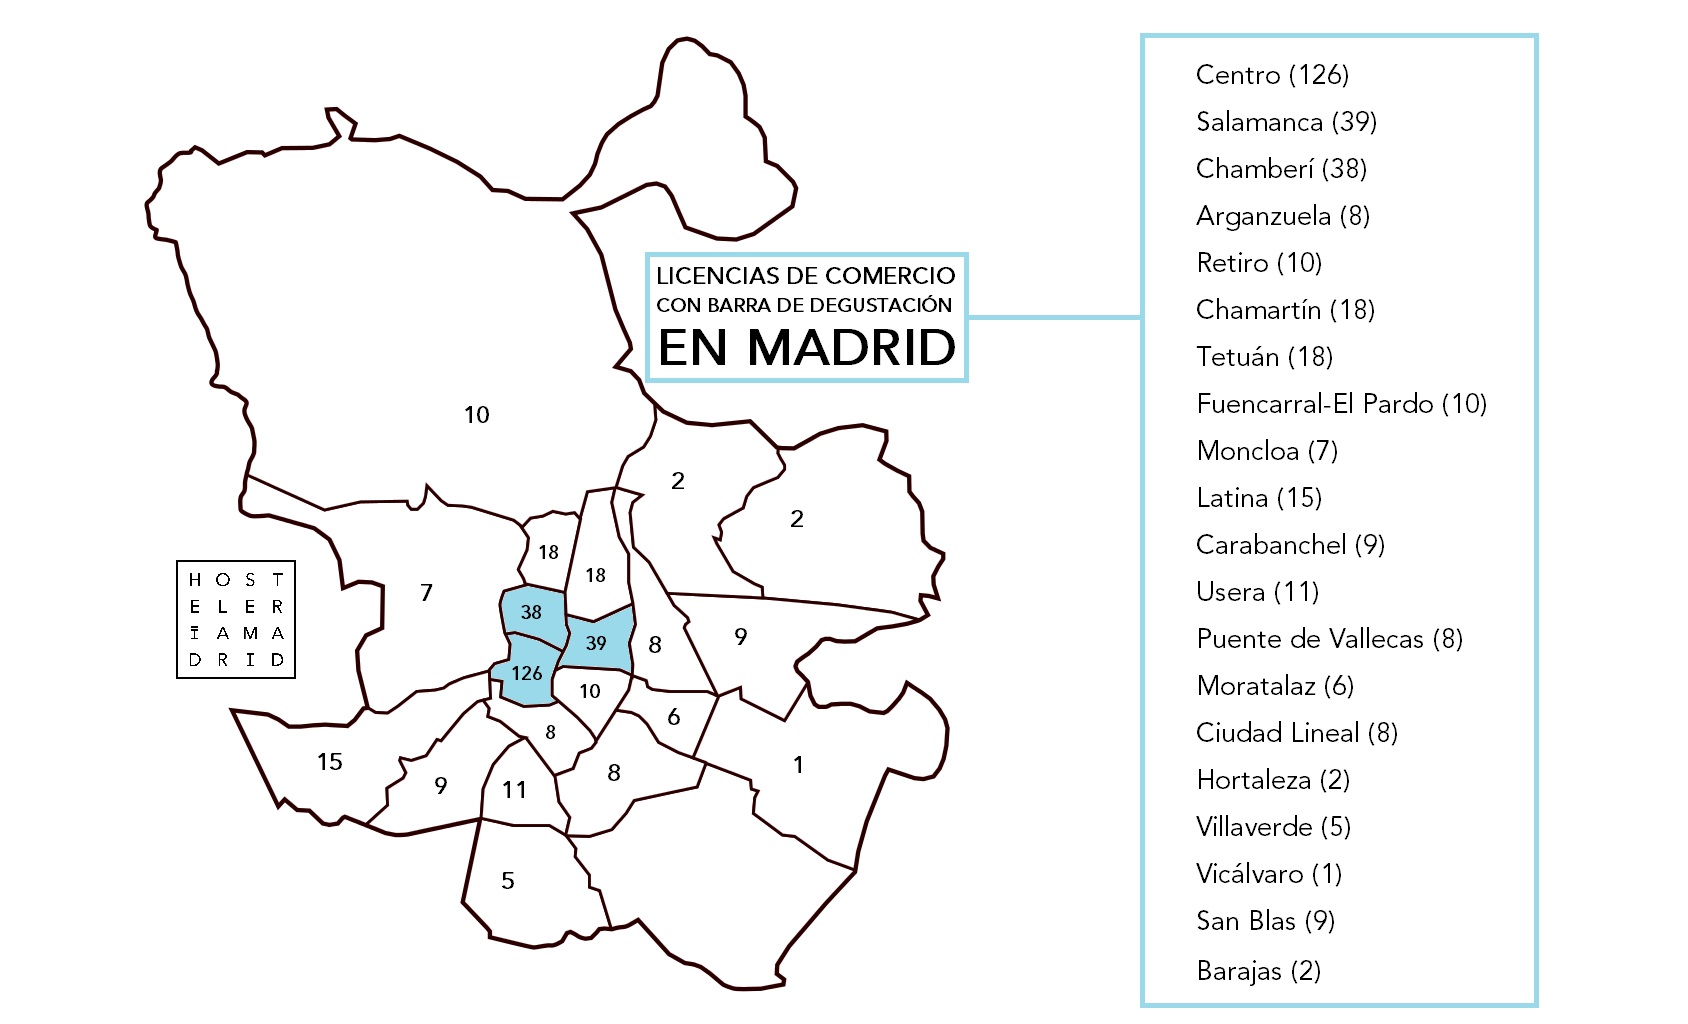 El Ayuntamiento de Madrid autoriza 350 comercios con barra de degustación que actúan como ‘falsos’ bares - La Viña